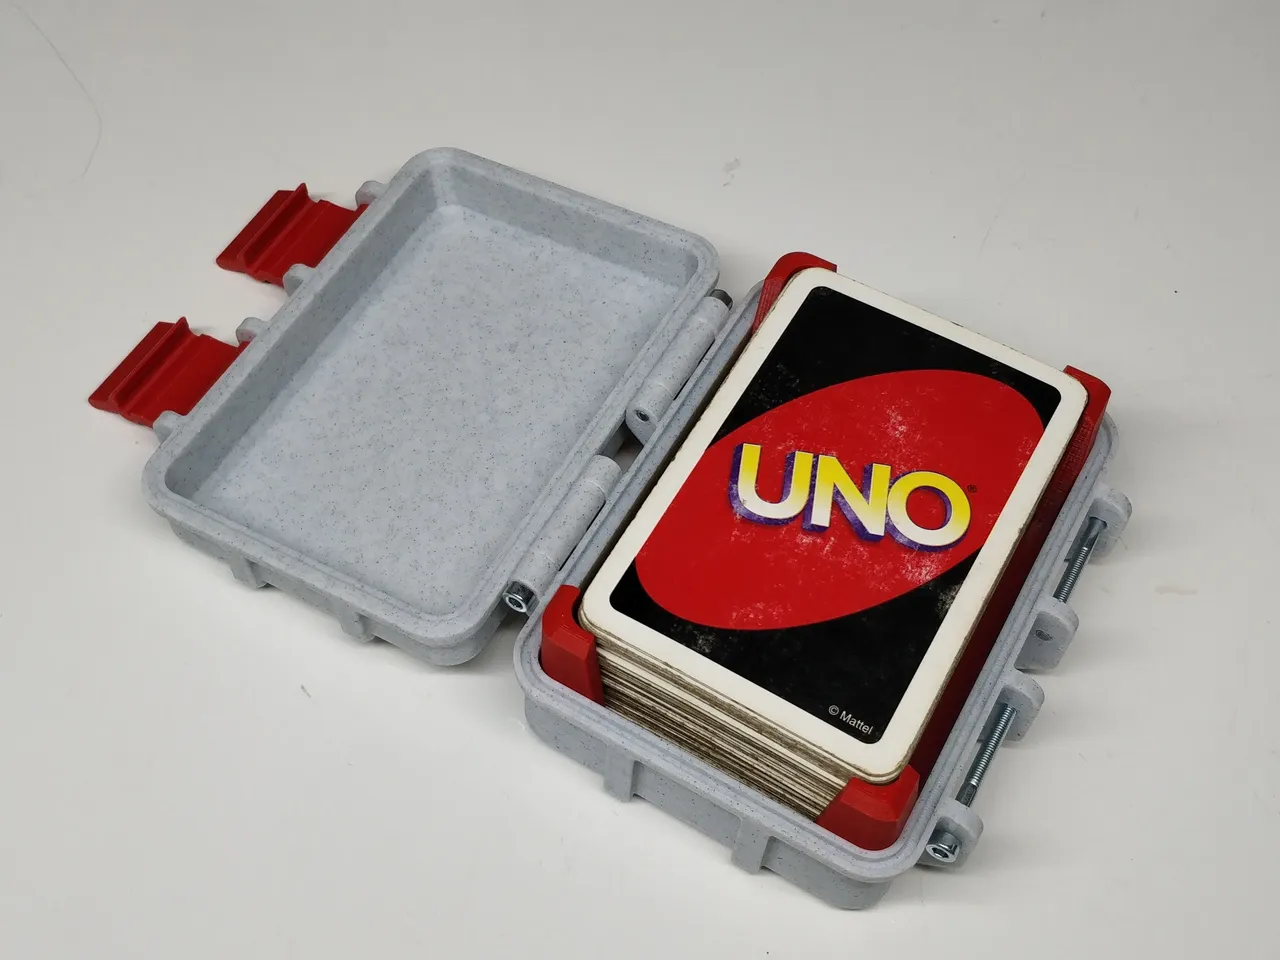 UNO Multicolored Card Box 2 3d model